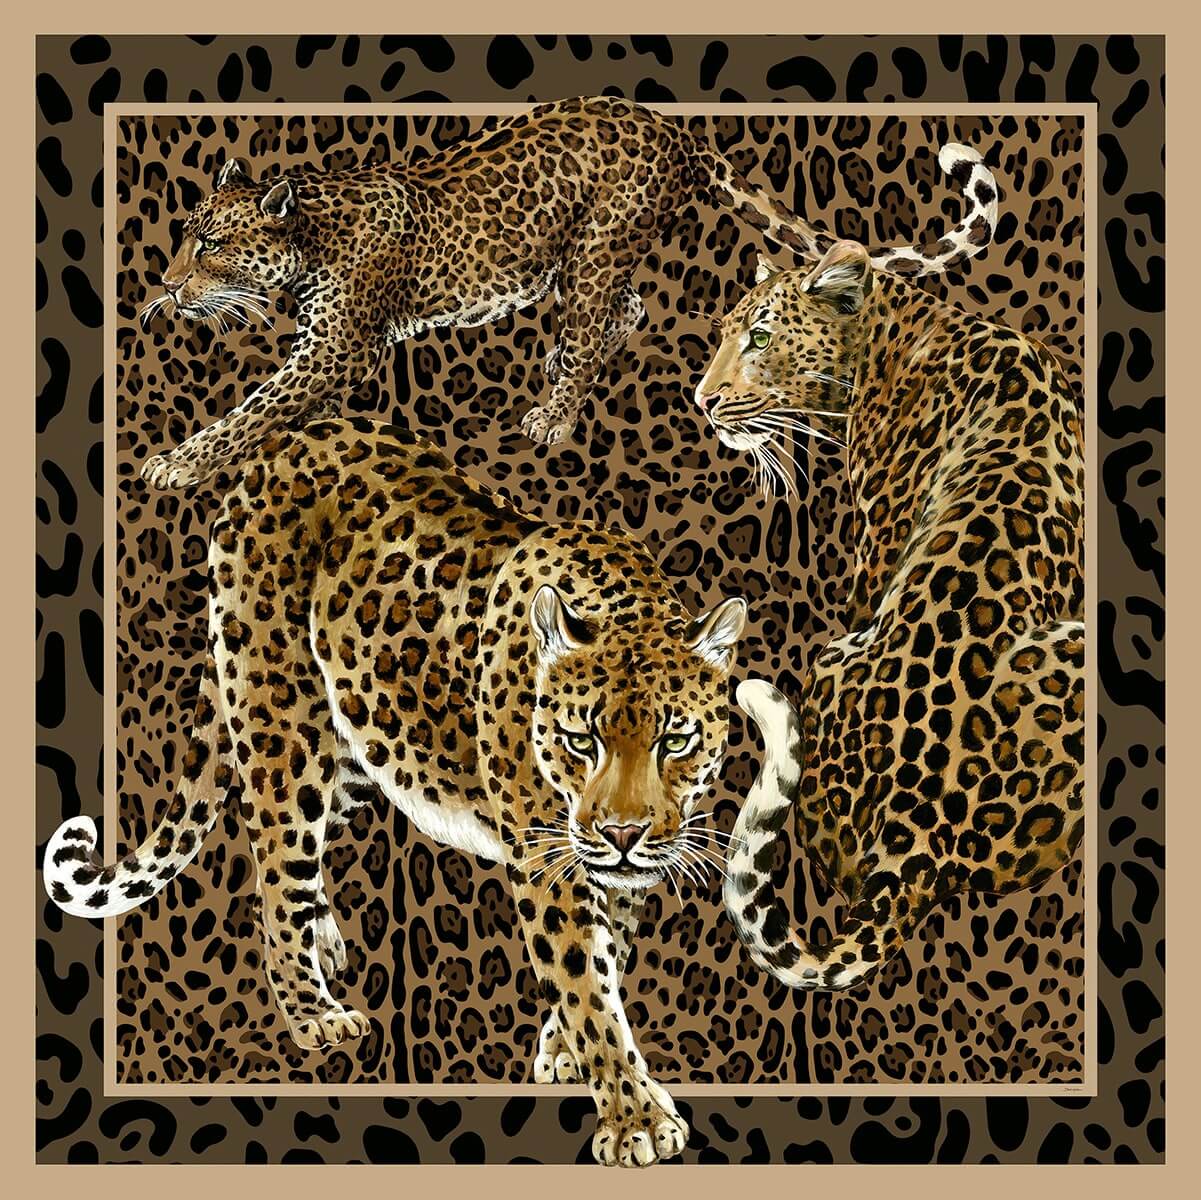 Seabrook Dolce & Gabbana Leopardo Incognito Wallpaper Mural - Jemma